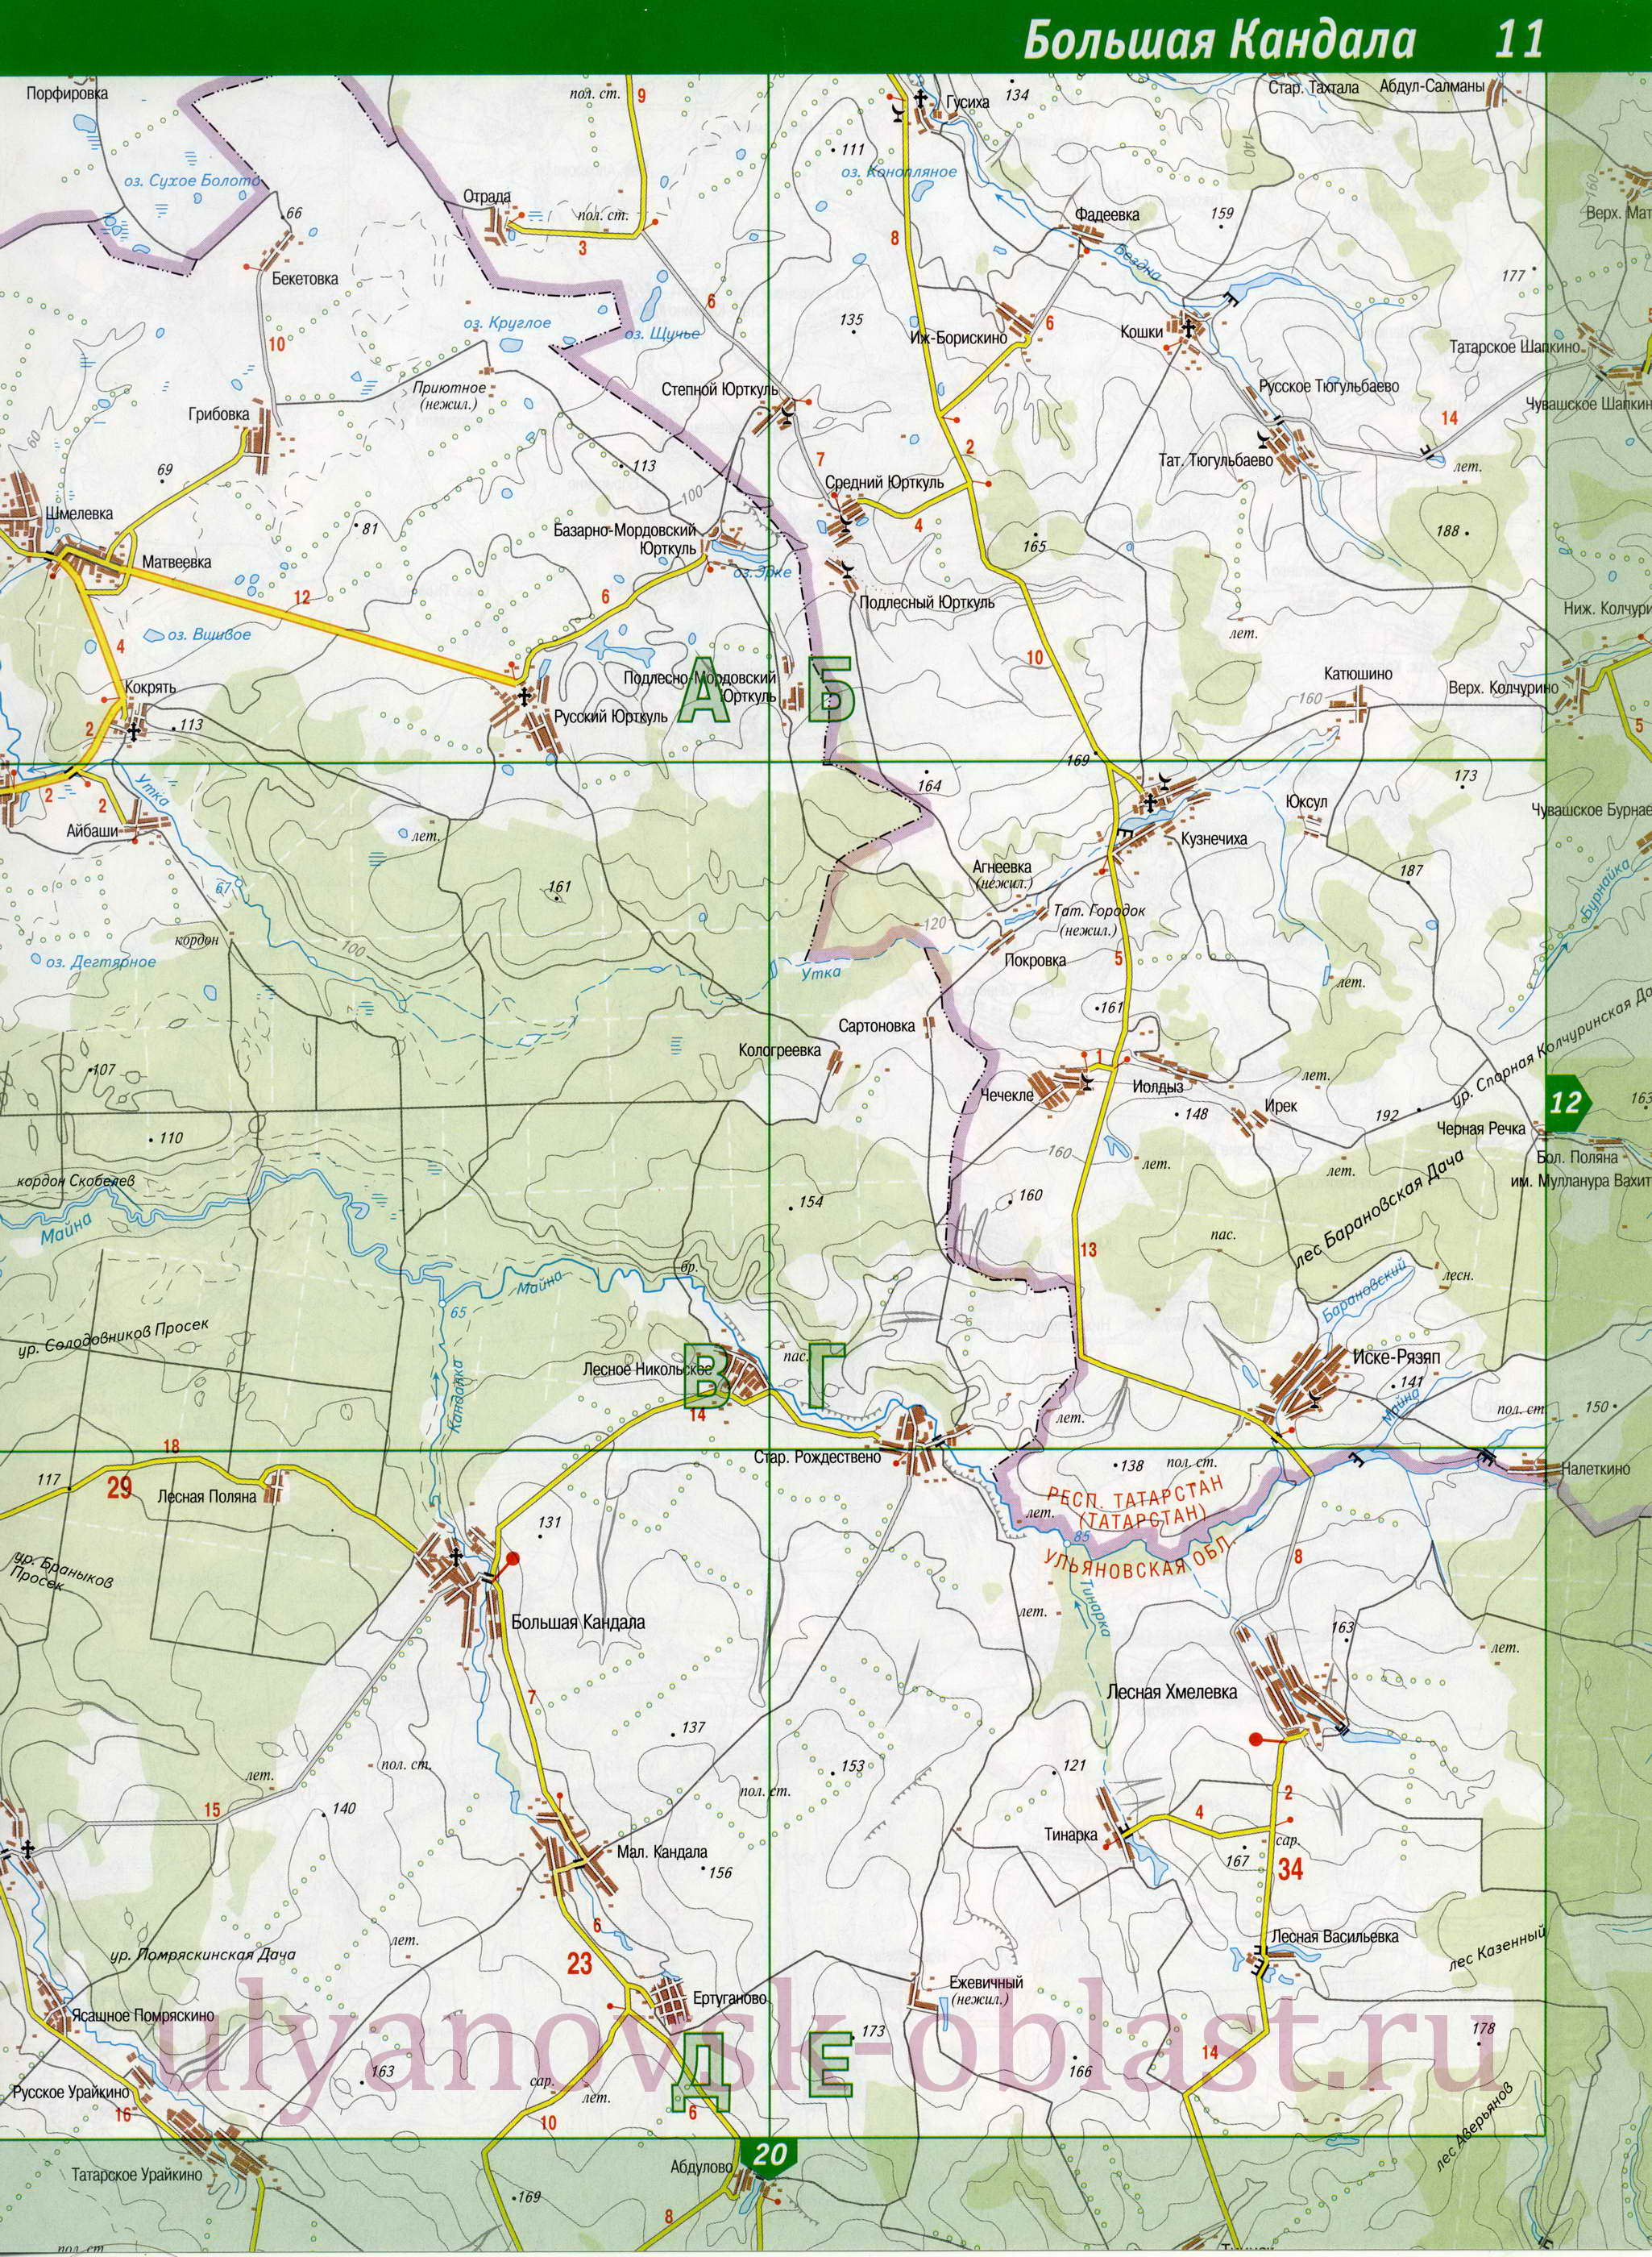 Карта Старомайнского района. Подробная карта Ульяновской области - Старомайнский р-он, B0 - 